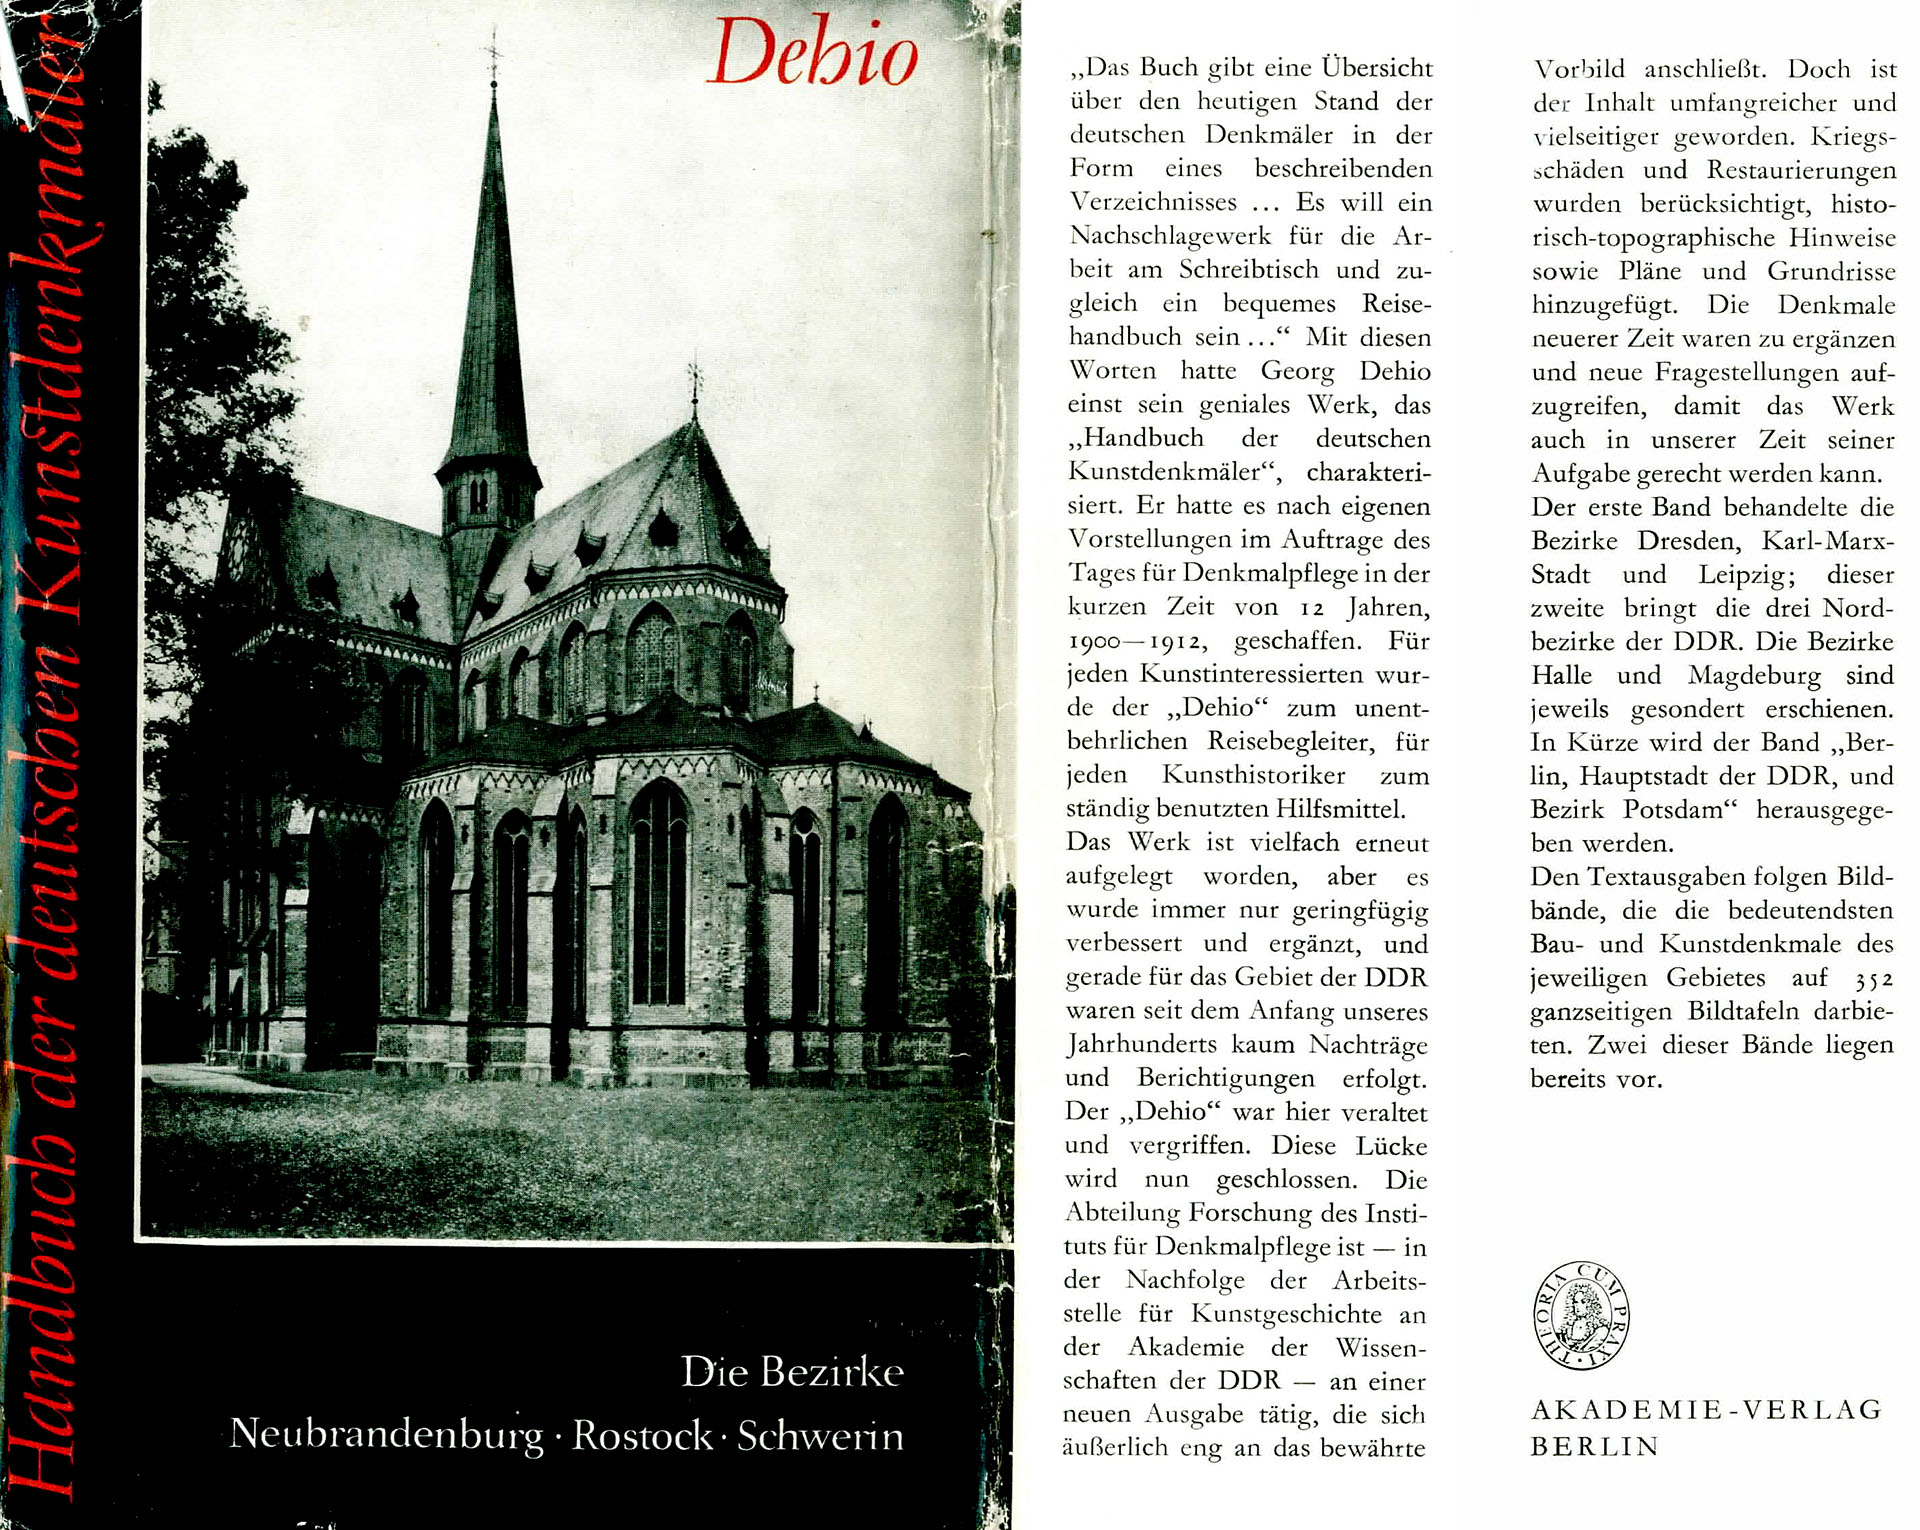 Handbuch der deutschen Kunstdenkmäler (Die Bezirke Neubrandenburg - Rostock - Schwerin) - Dehio, Georg